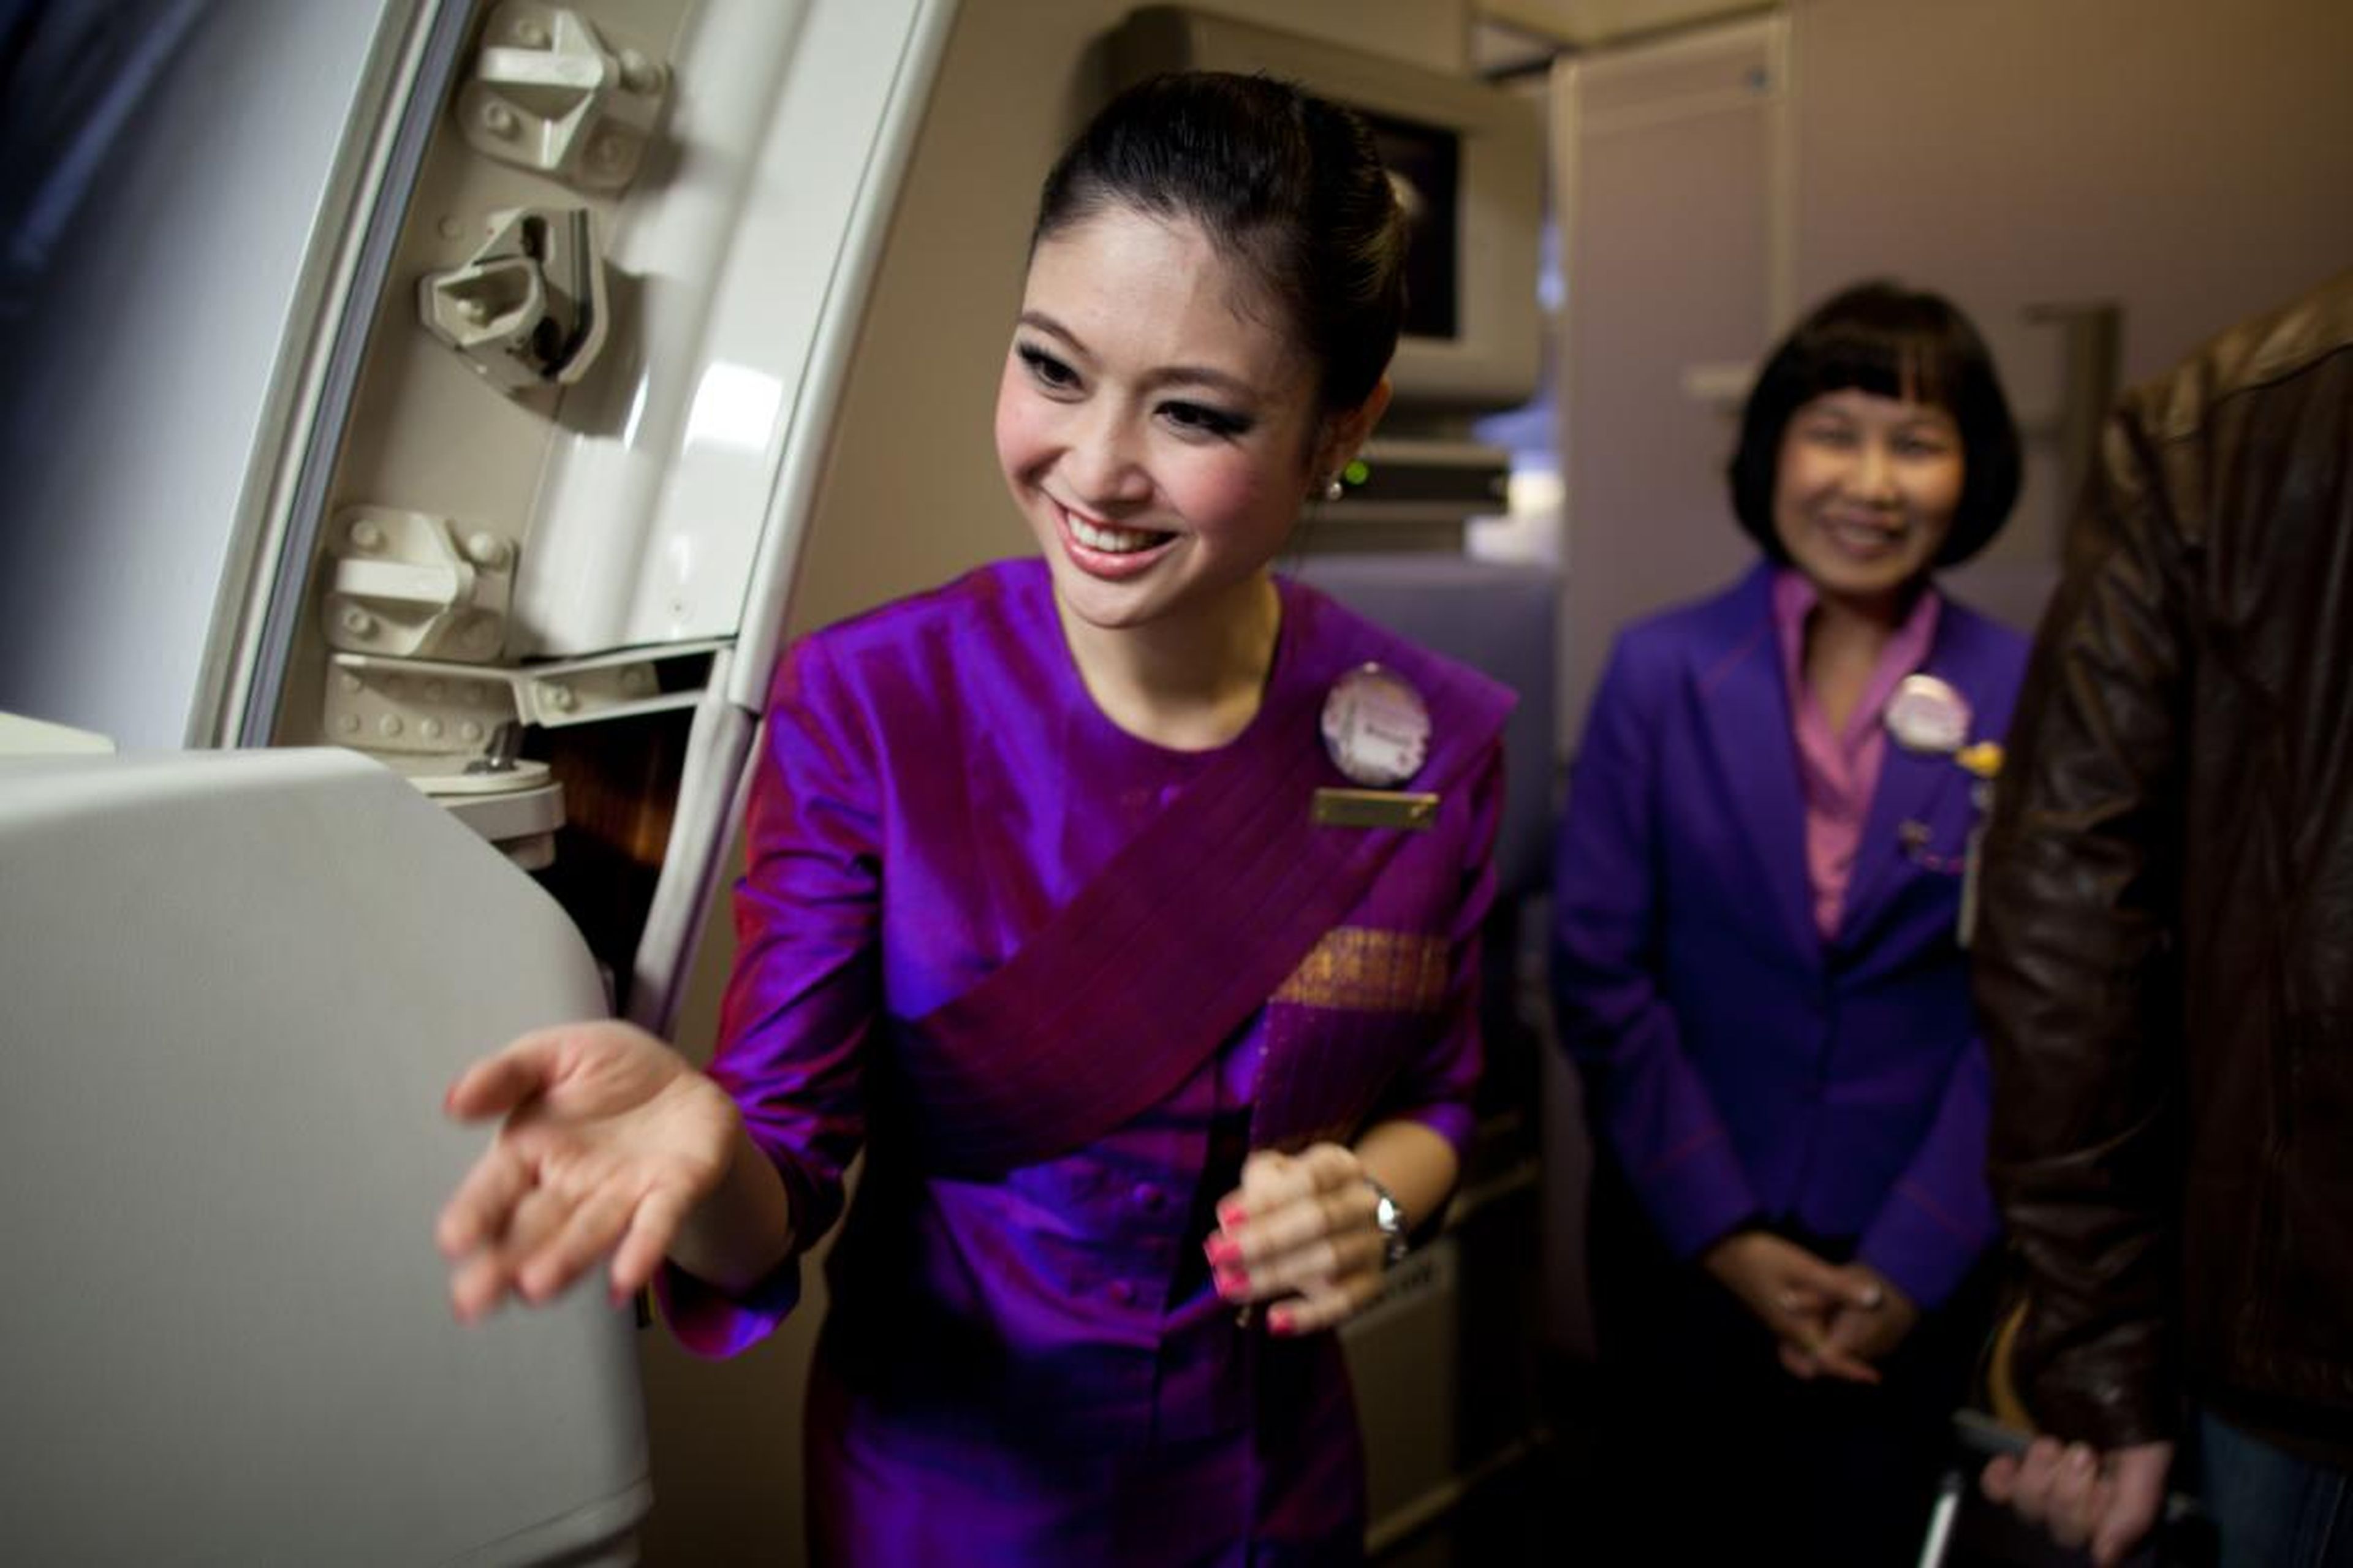 Thai Airways.